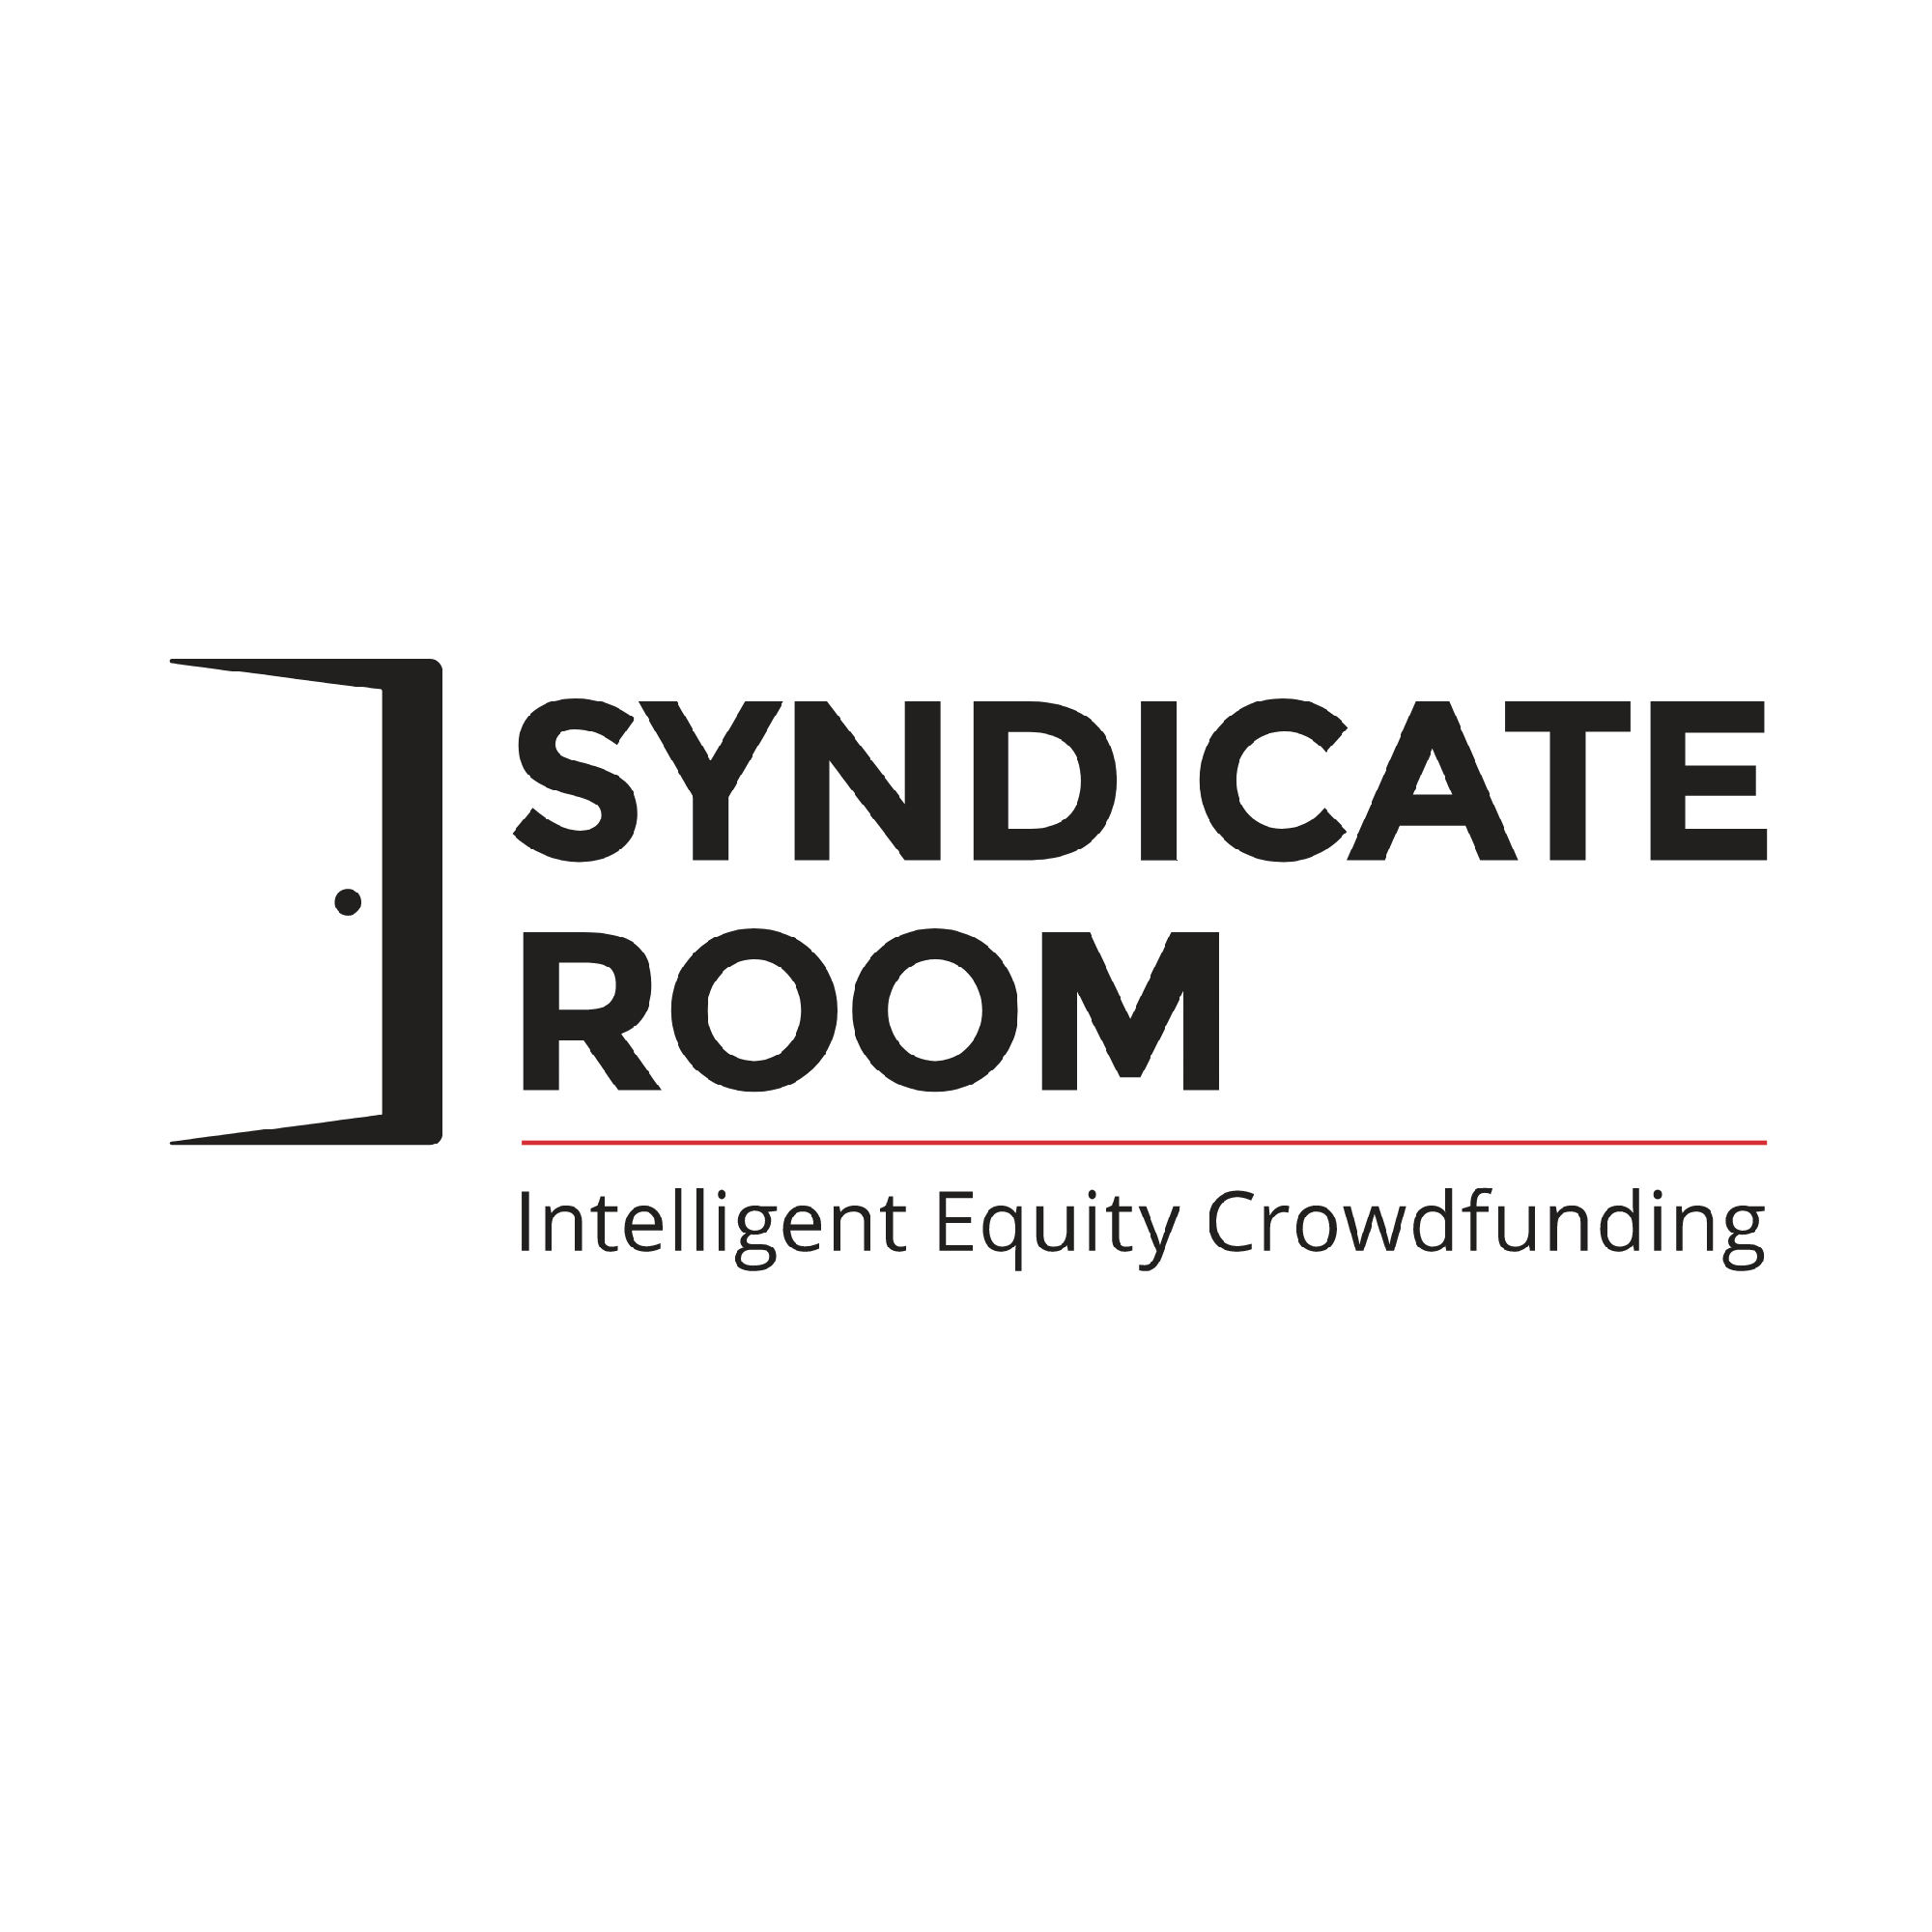 Syndicateroom logo